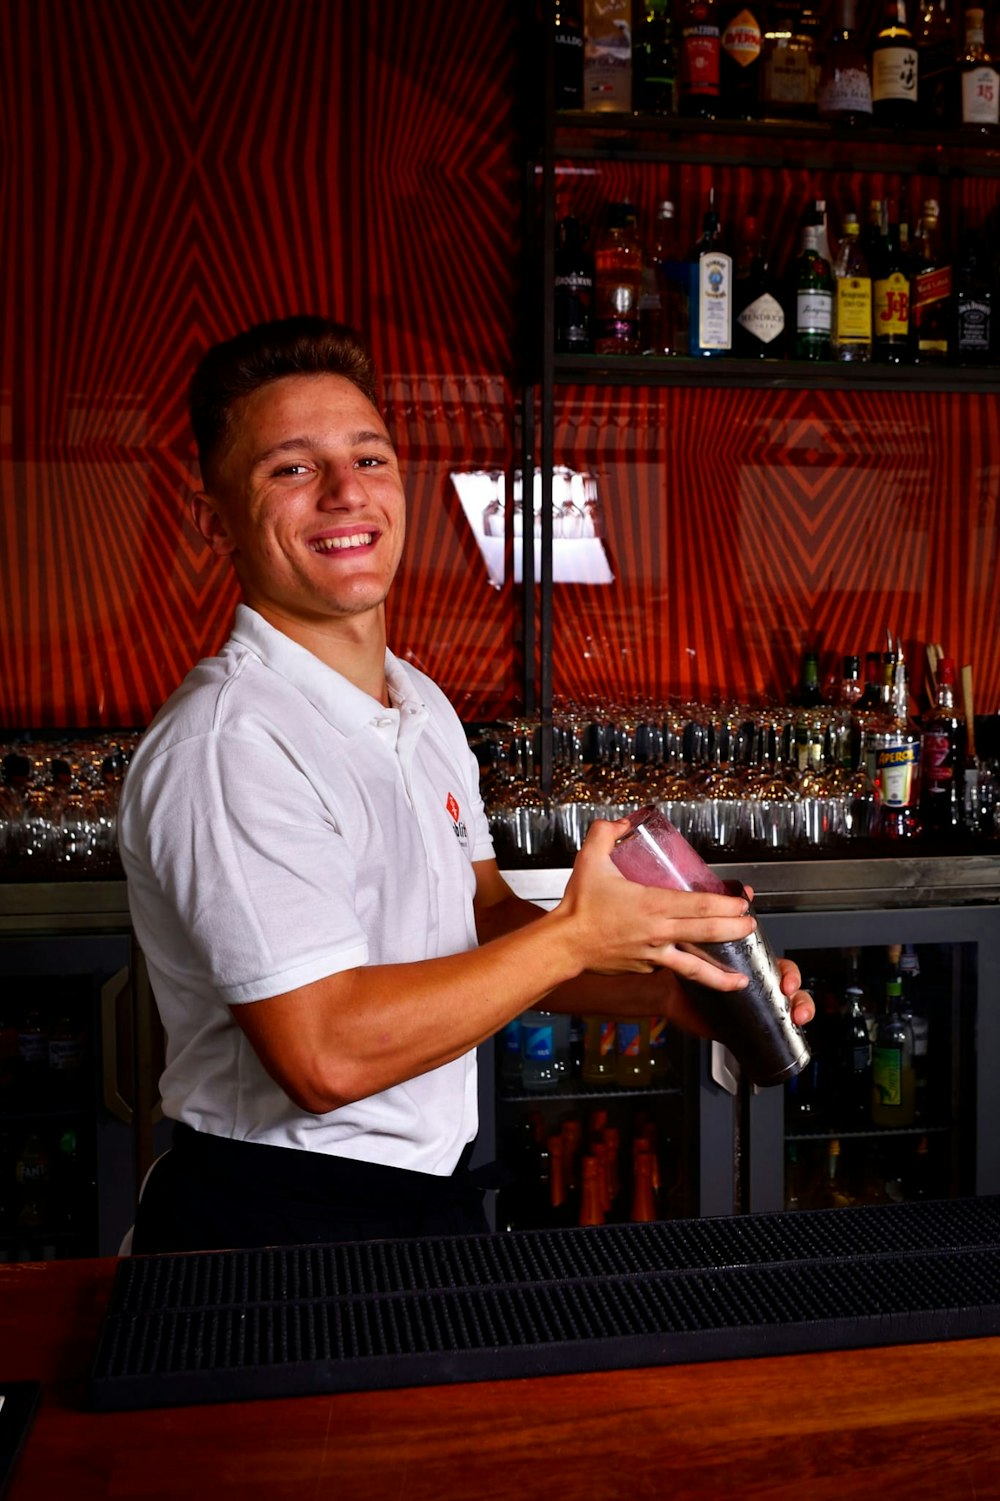 a man standing behind a bar holding a bottle